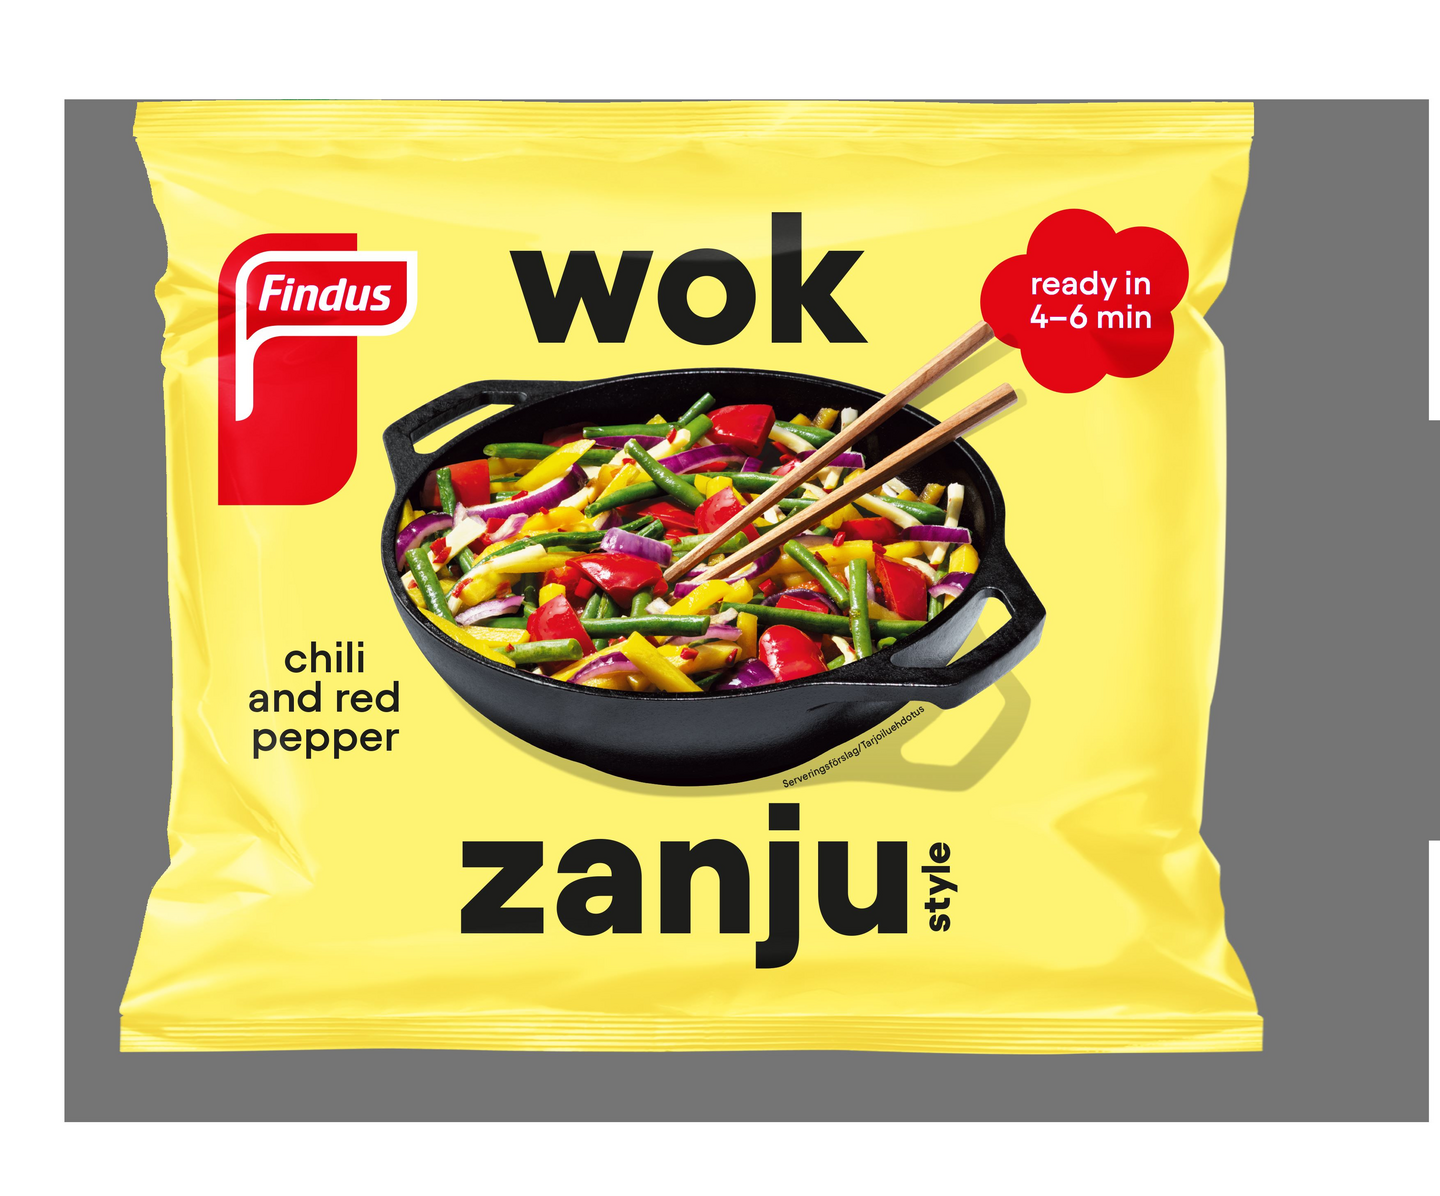 Findus Wok 450g Spicy Zanju